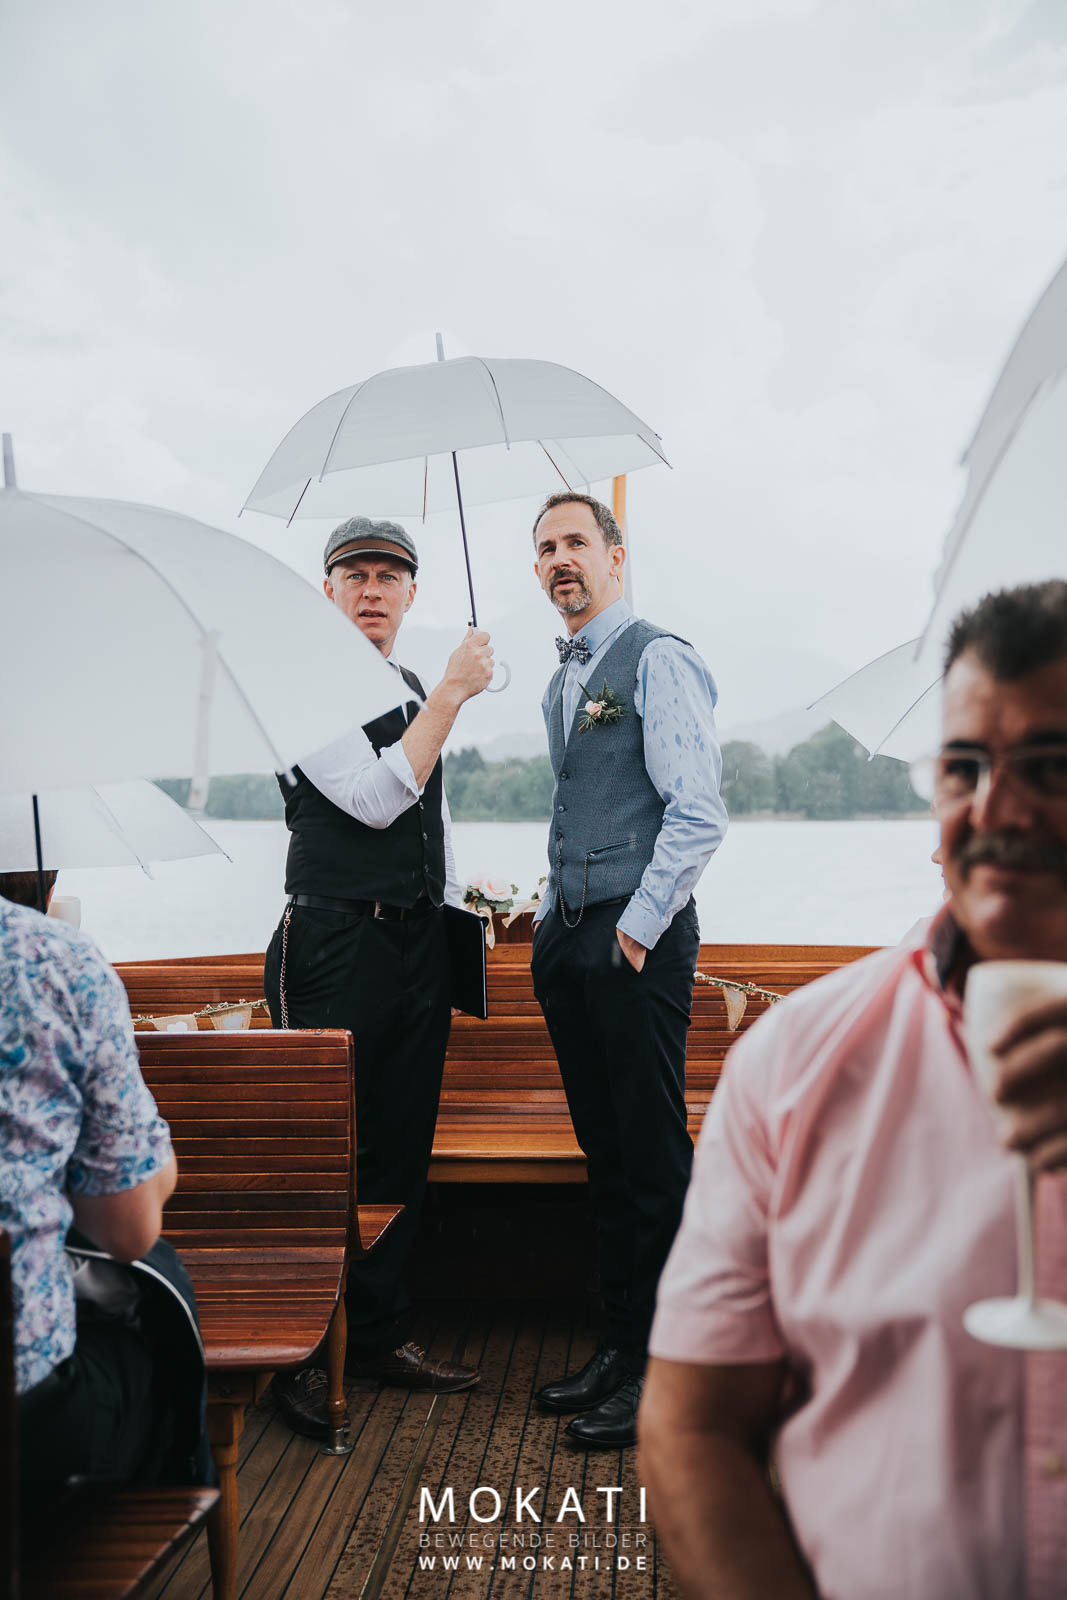 Freie Trauung auf einem Schiff | Hochzeit im Regen | Strauß & Fliege